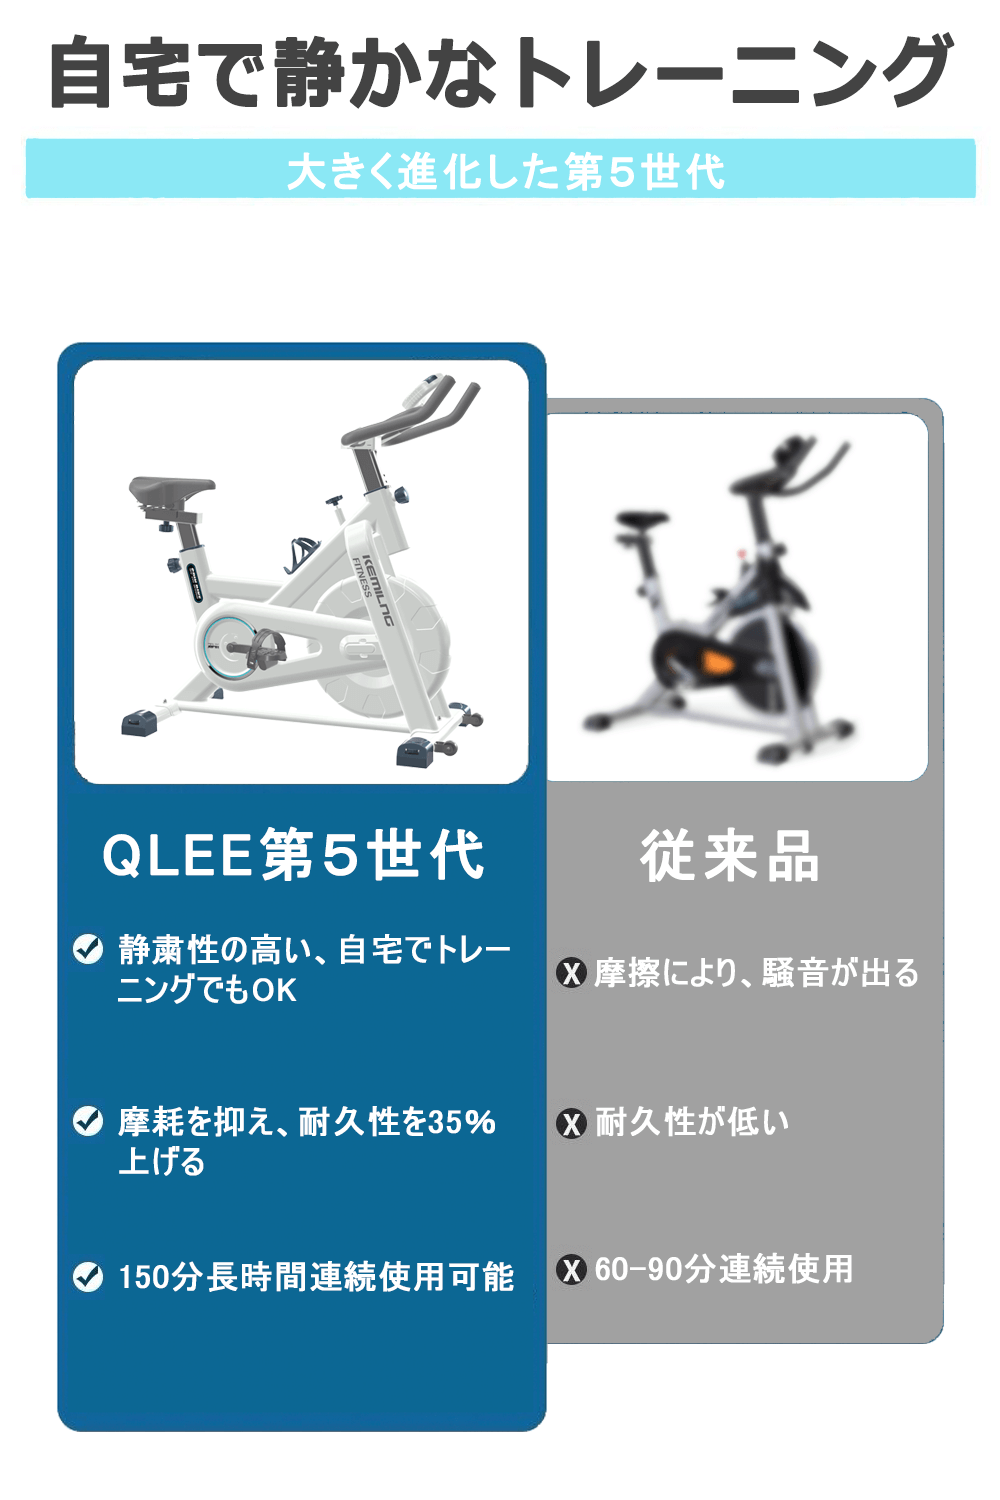 【送料無料】QLEE フィットネスバイク スピンバイク エアロビクスバイク トレーニングバイク ダイエット器具